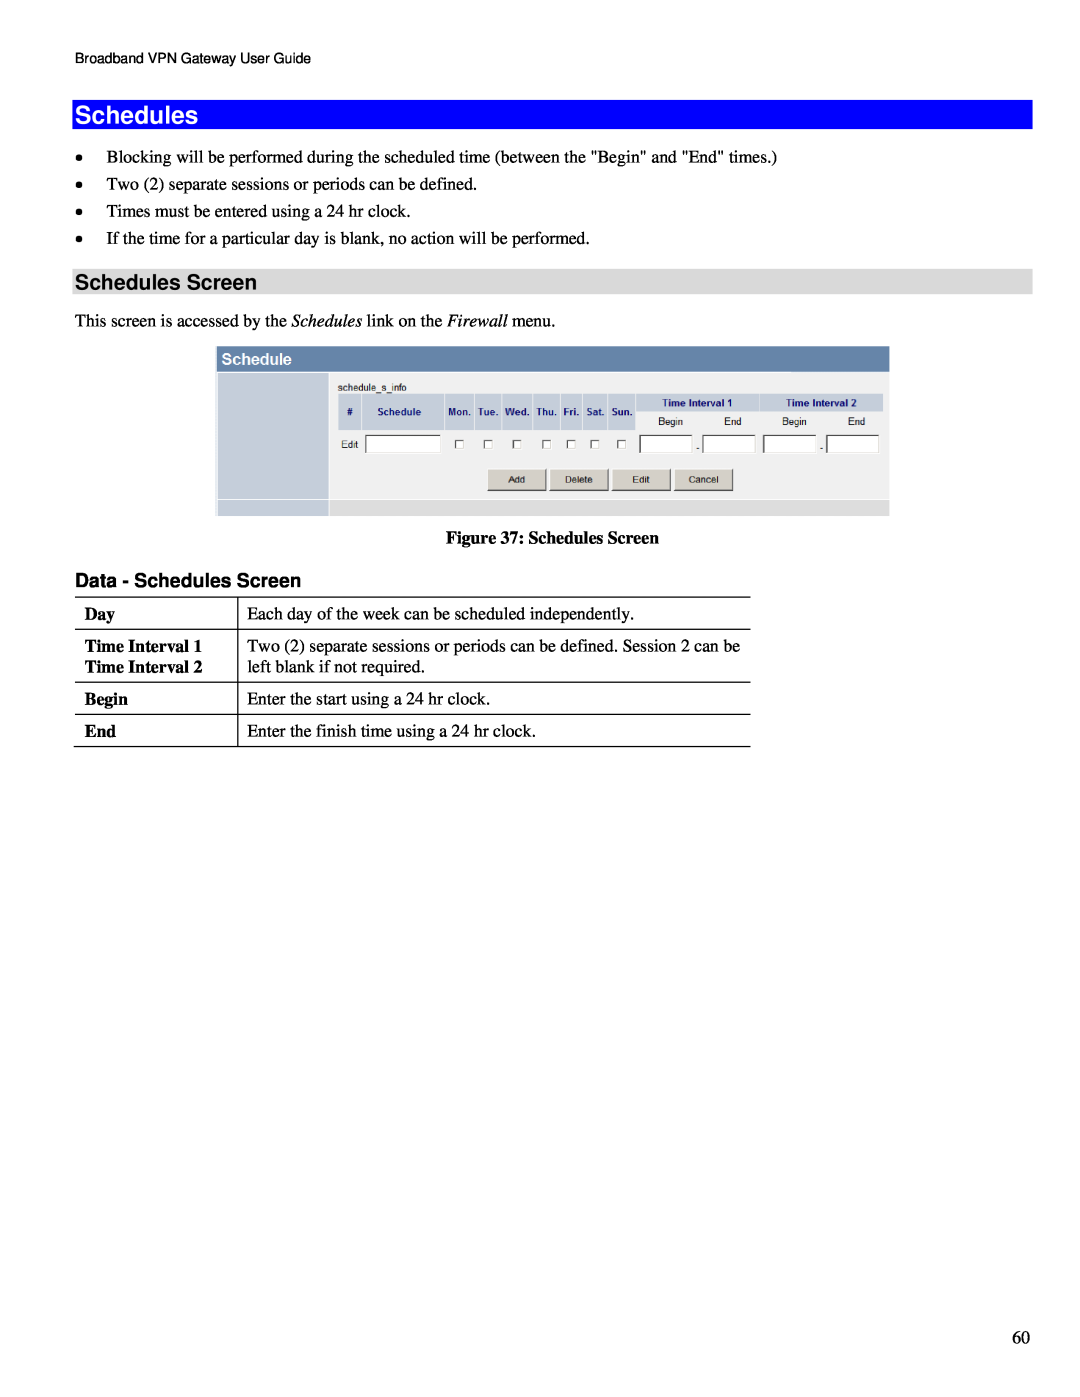 TRENDnet TW100-BRV324 manual Schedules Screen 